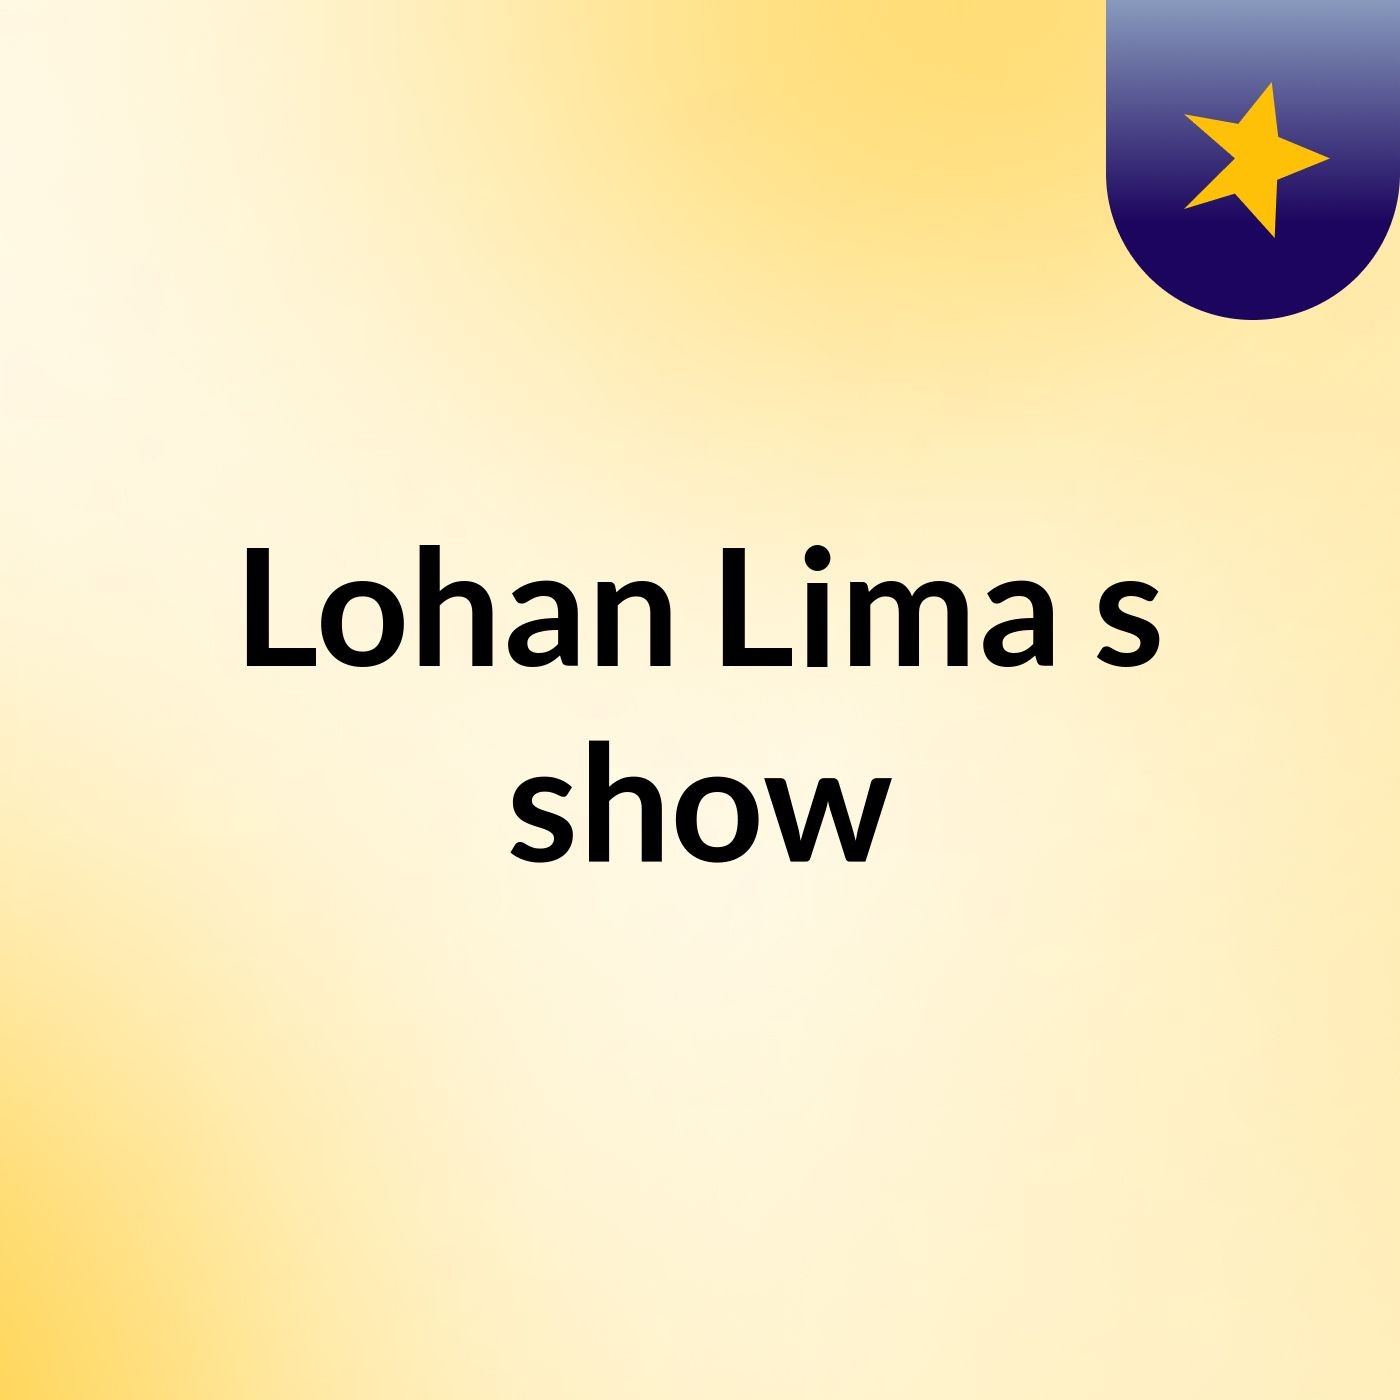 Lohan Lima's show